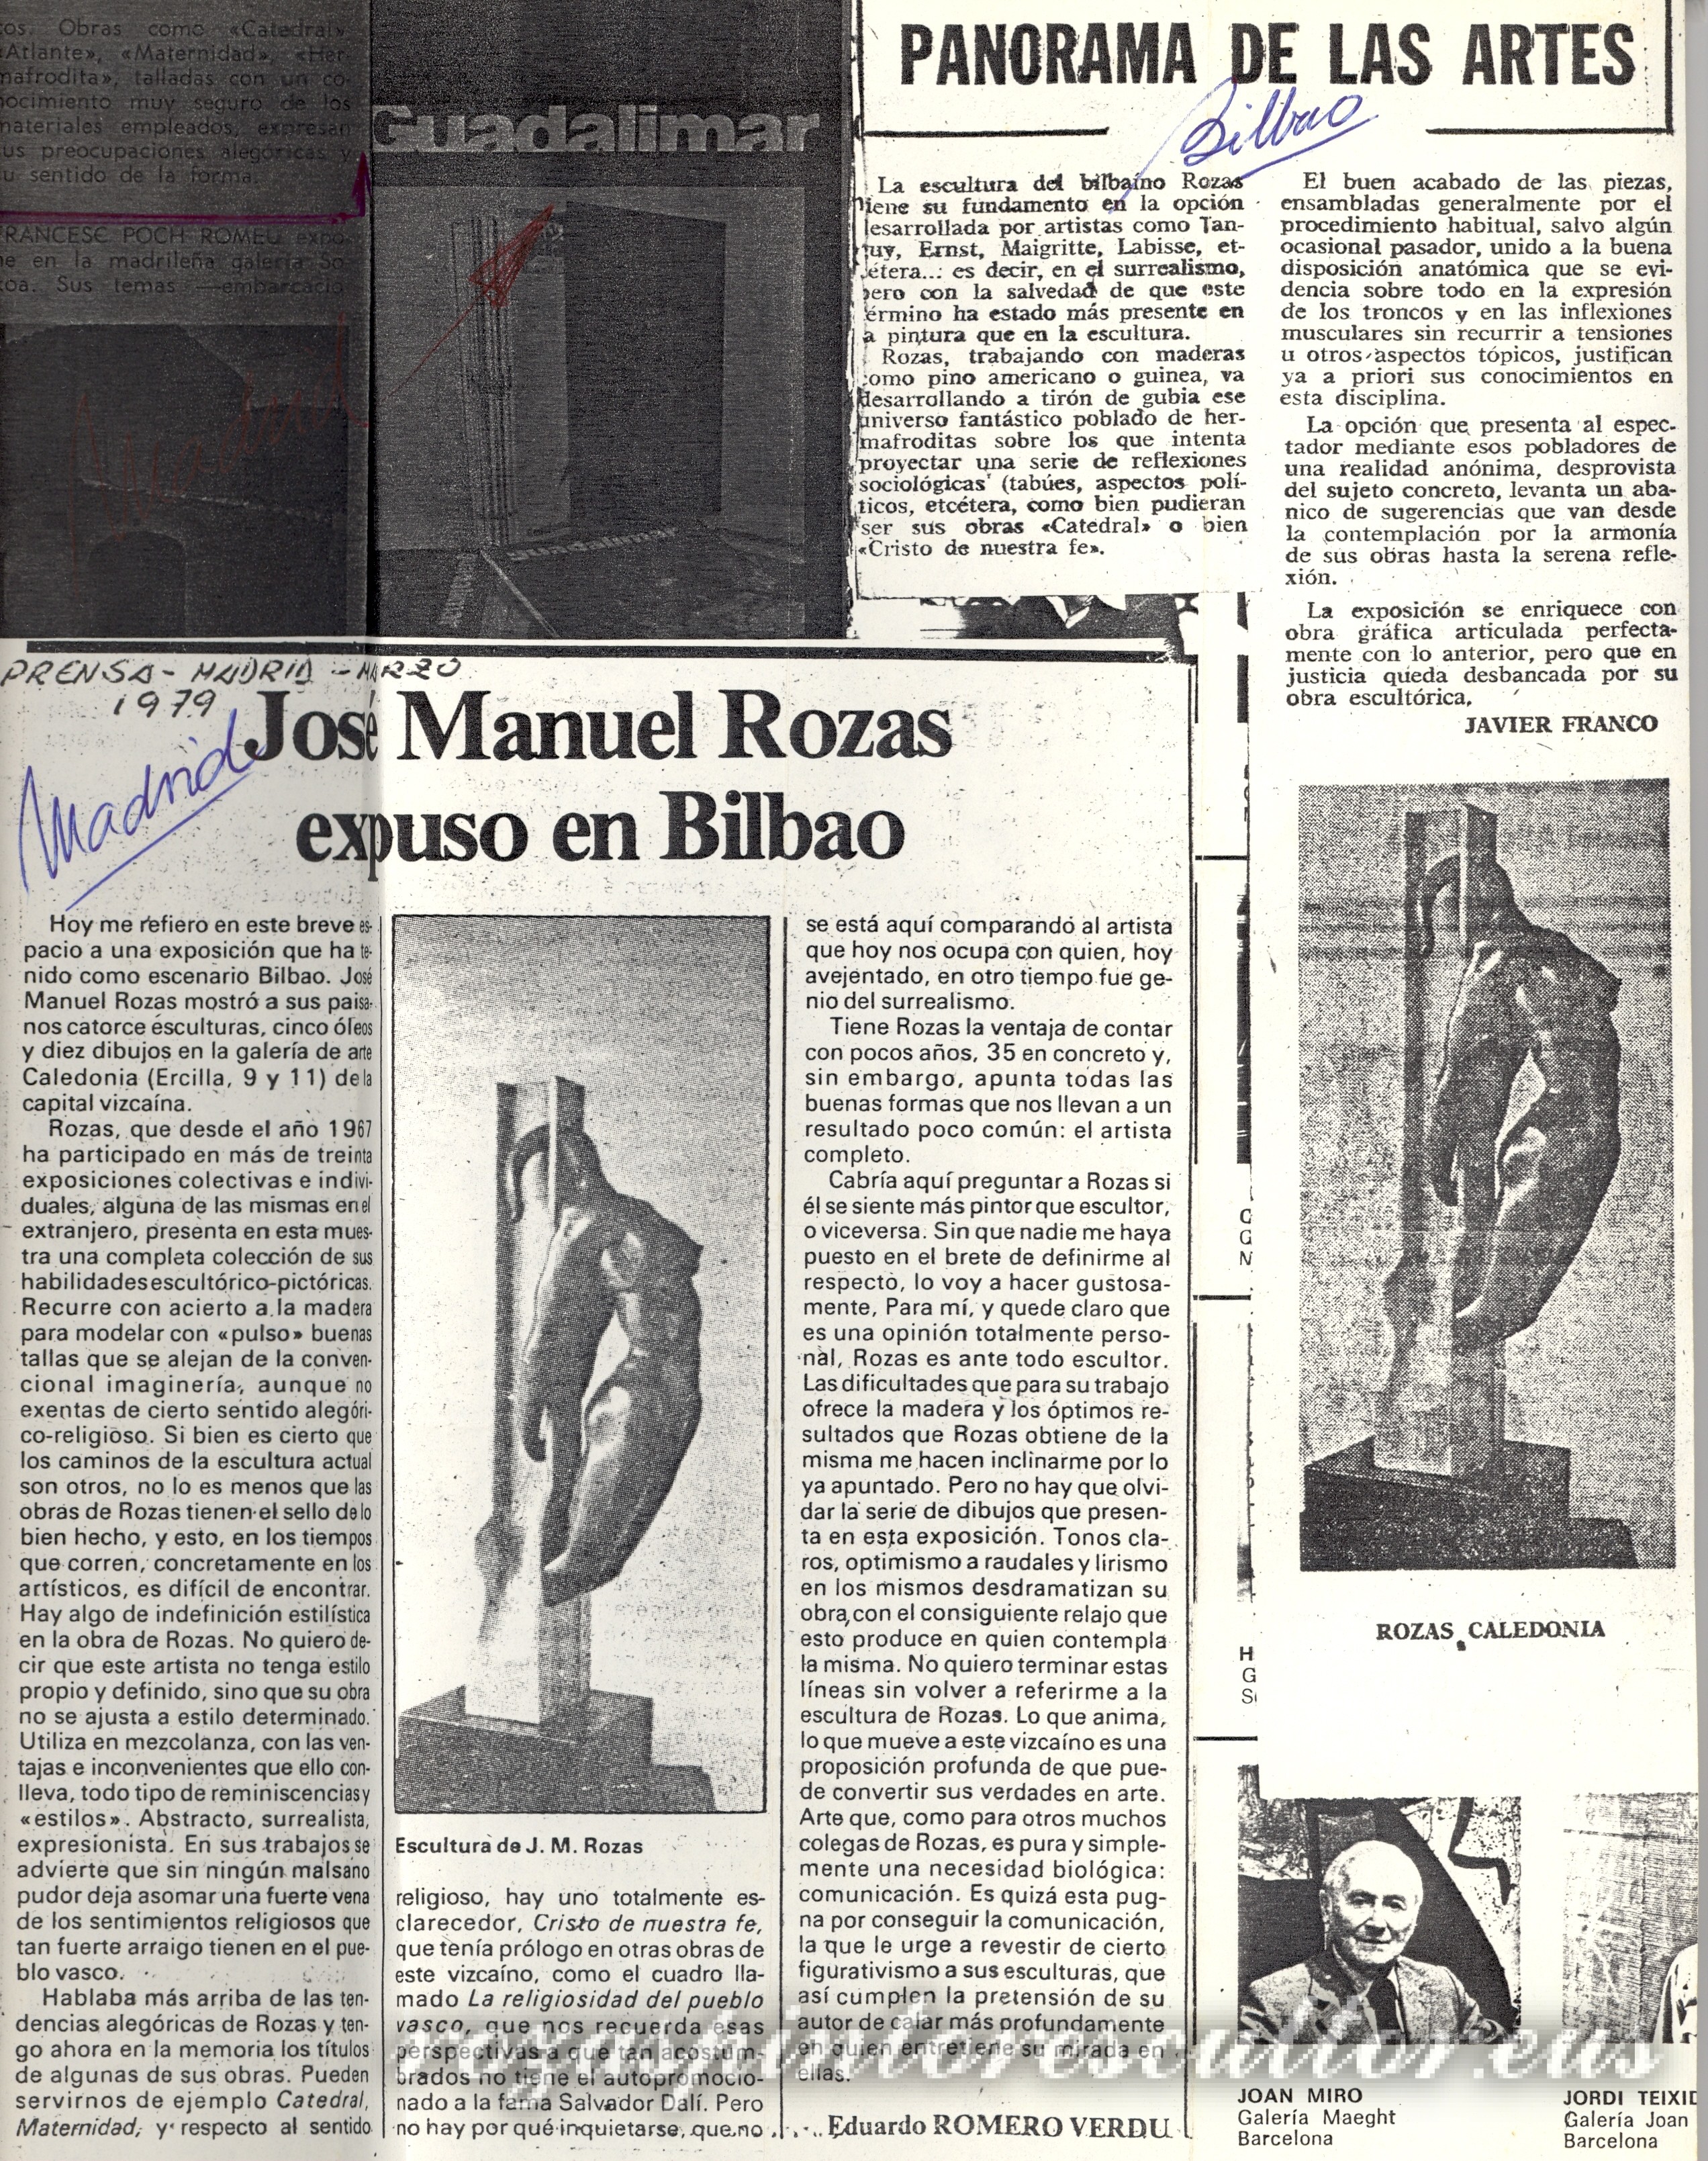 1979 JM Rozas exhibited in Bilbao – Eduardo Romero Verdu